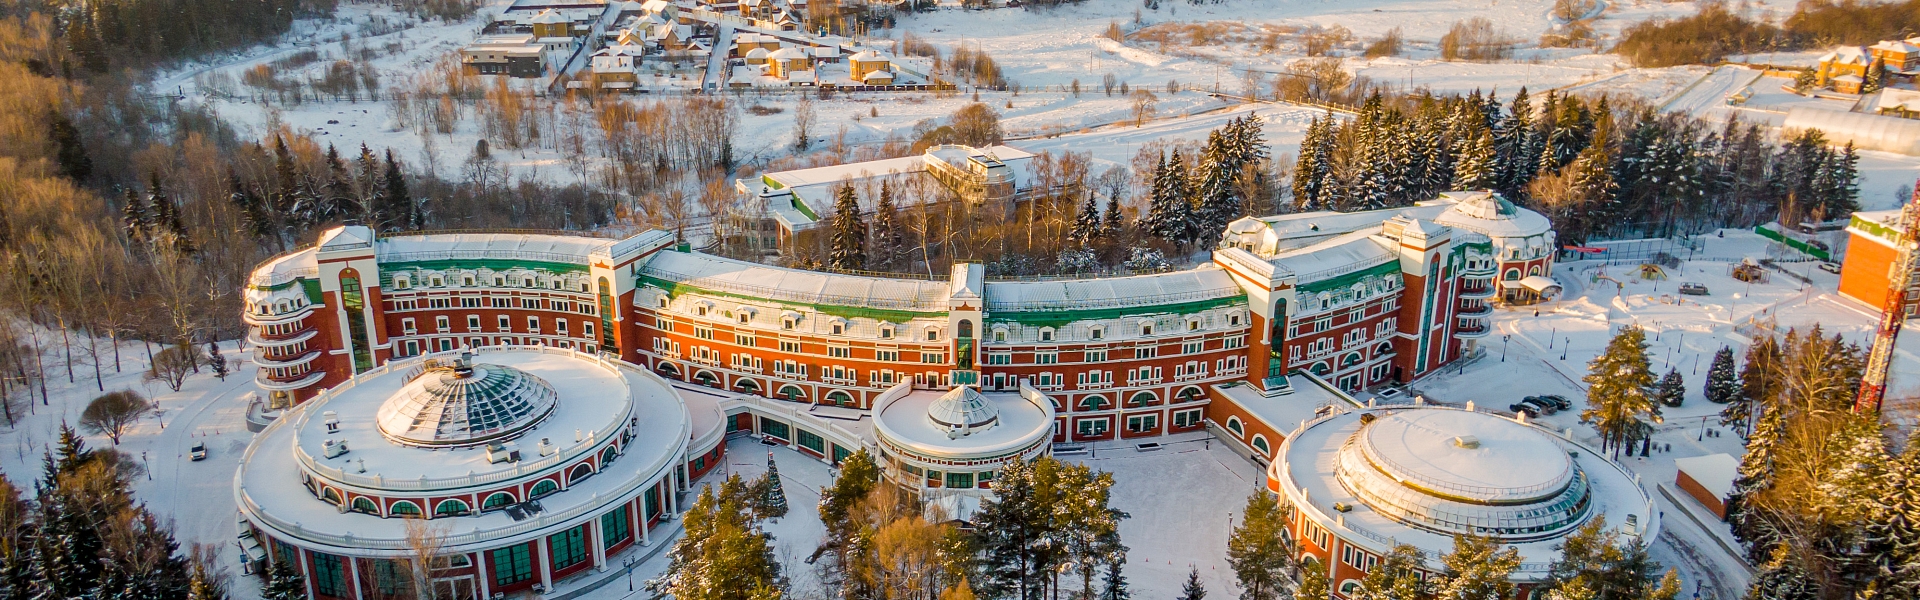 Территория отеля зимой, фотографии